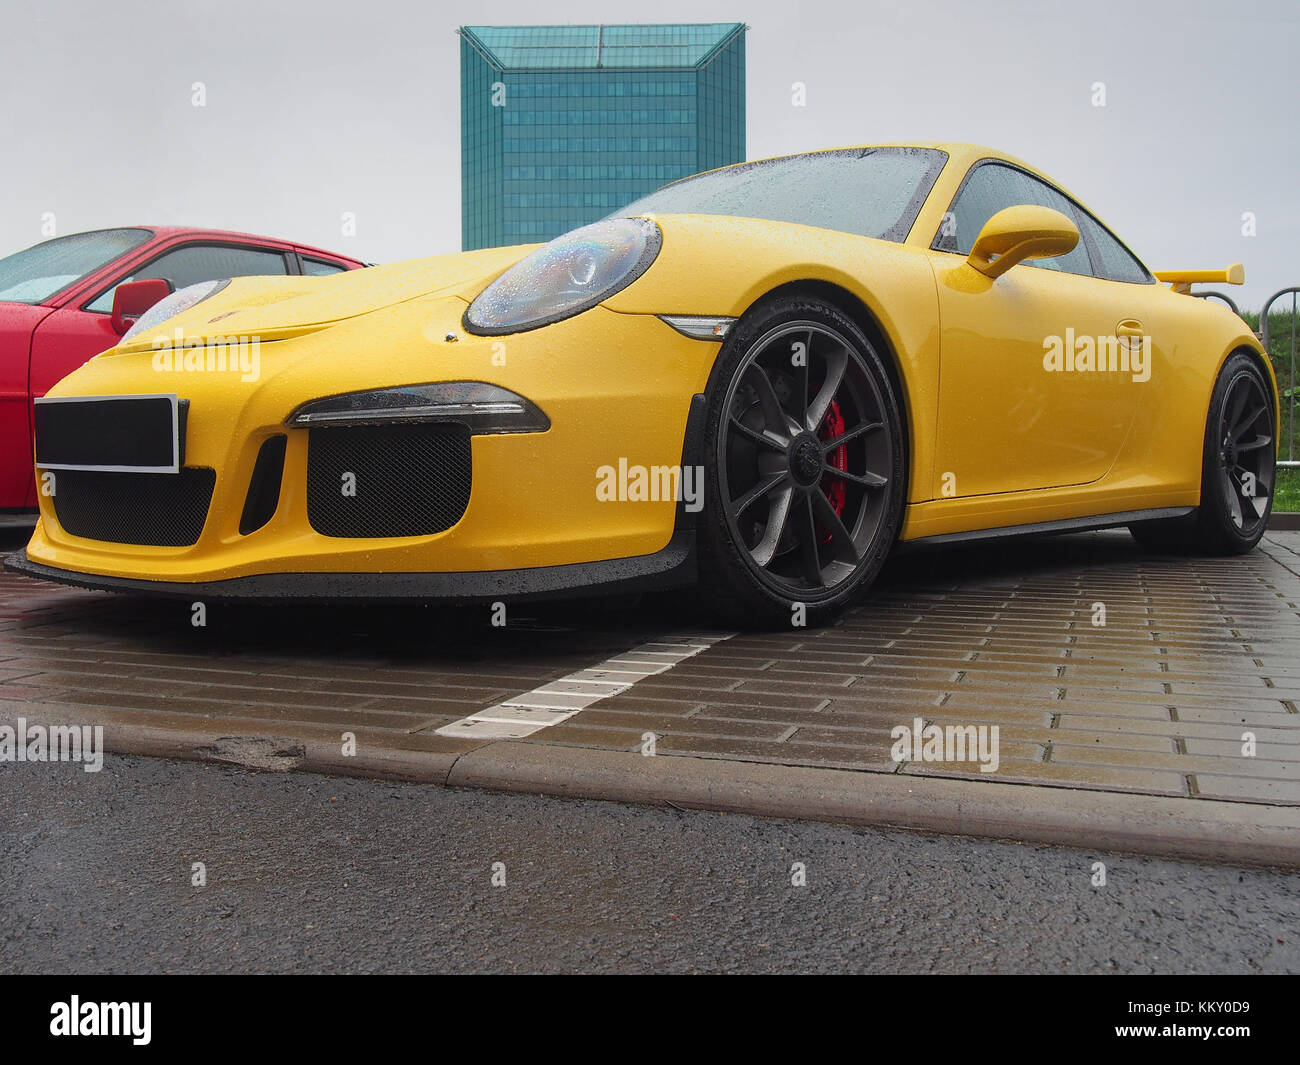 Porsche 911 GT3 jaune sous la pluie. Ce modèle est l'une des voitures les plus populaires pour les fans de Porsche. Banque D'Images